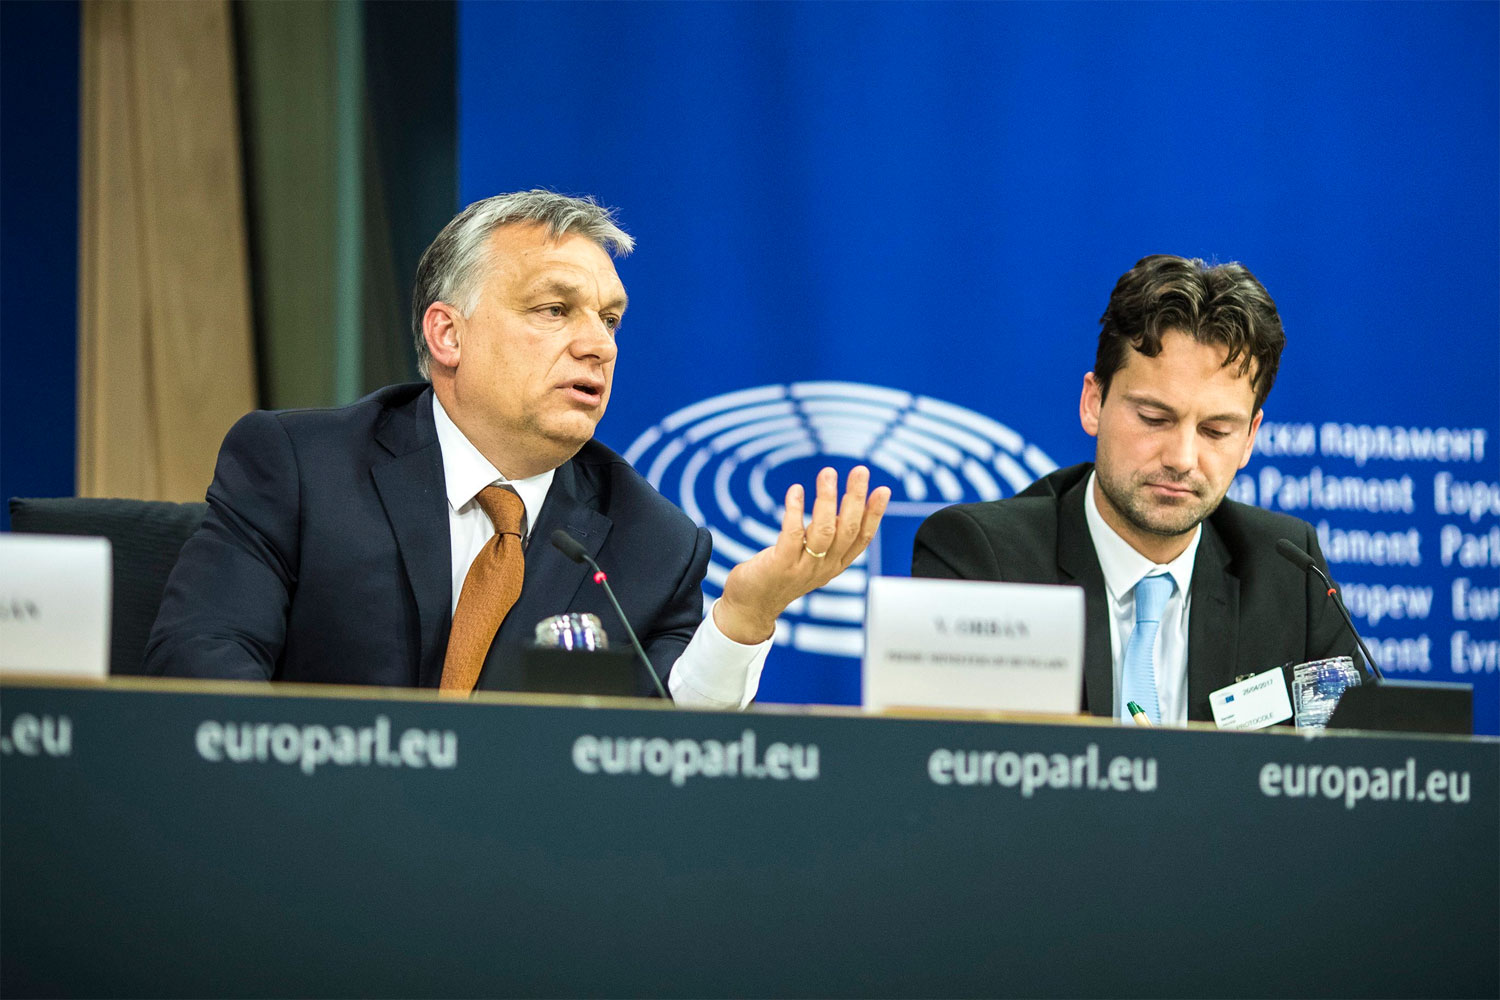 A Miniszterelnöki Sajtóiroda által közreadott képen Orbán Viktor miniszterelnök (b) nemzetközi sajtótájékoztatót tart az Európai Parlament plenáris ülése után Brüsszelben 2017. április 26-án. A kormányfő felszólalt az alapjogok magyarországi helyzetével foglalkozó ülésen. Mellette Havasi Bertalan, a Miniszterelnöki Sajtóiroda vezetője (j). MTI Fotó: Miniszterelnöki Sajtóiroda / Szecsődi Balázs